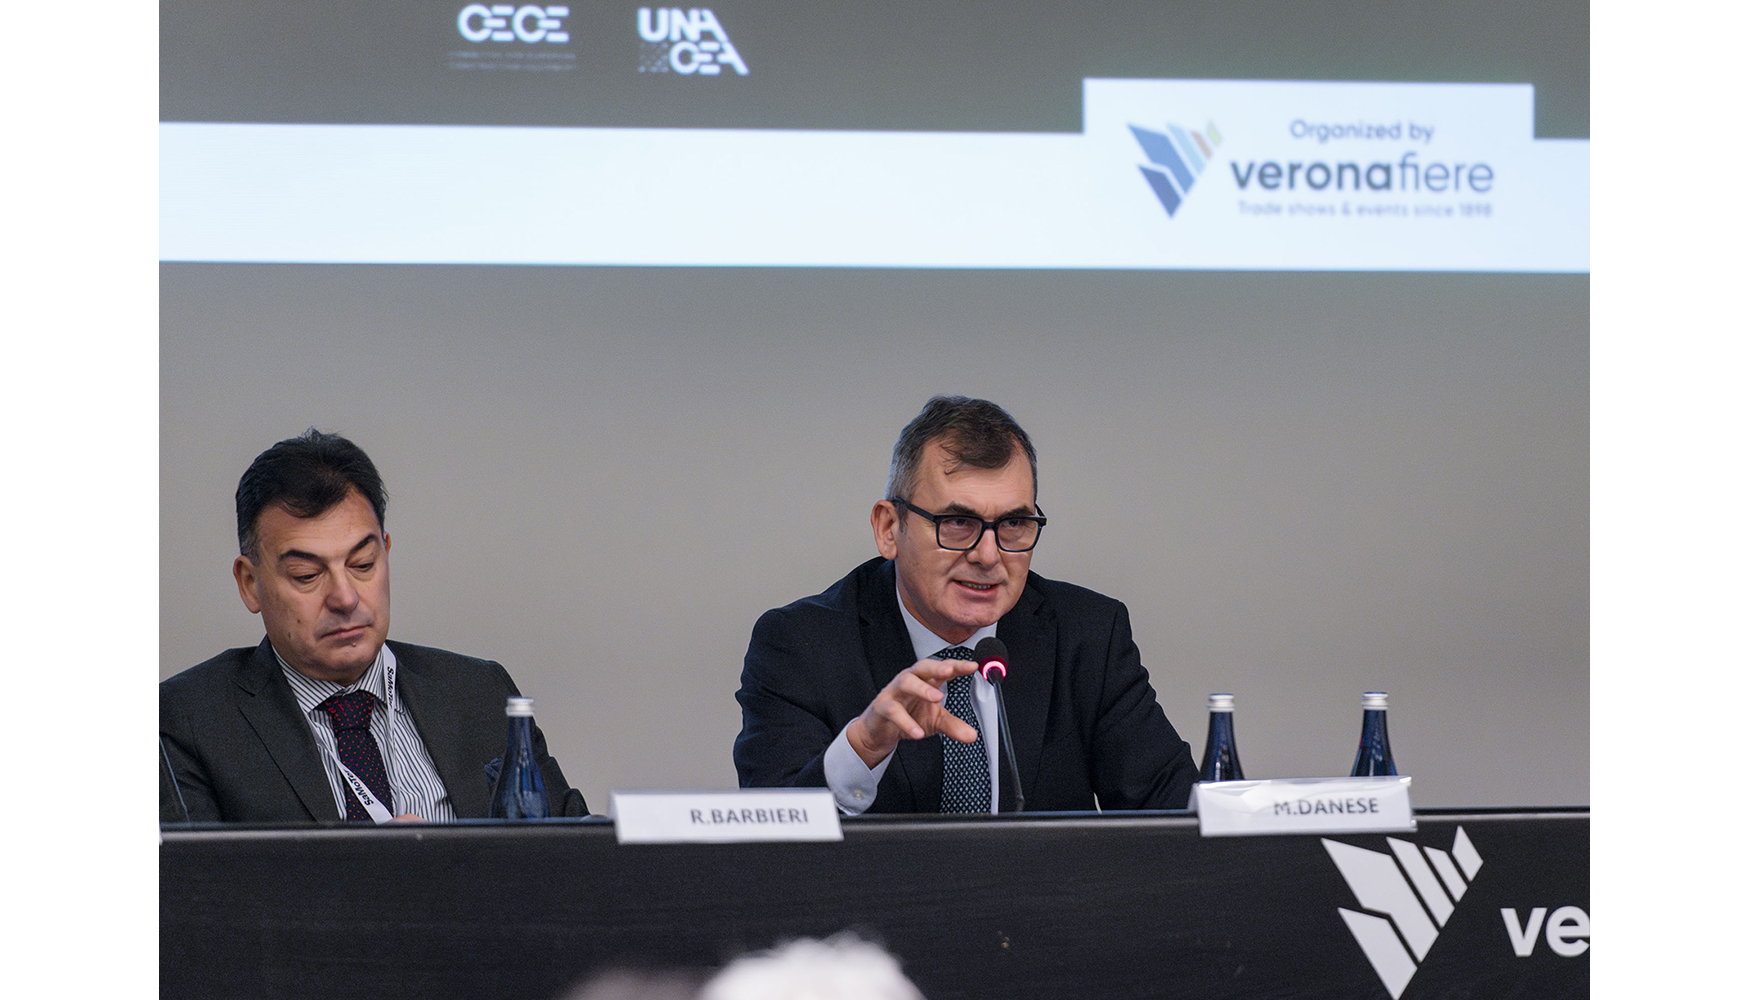 De izquierda a derecha: Raul Barbieri, director comercial de Veronafiere, y Maurizio Danese, director general de la organizacin ferial...